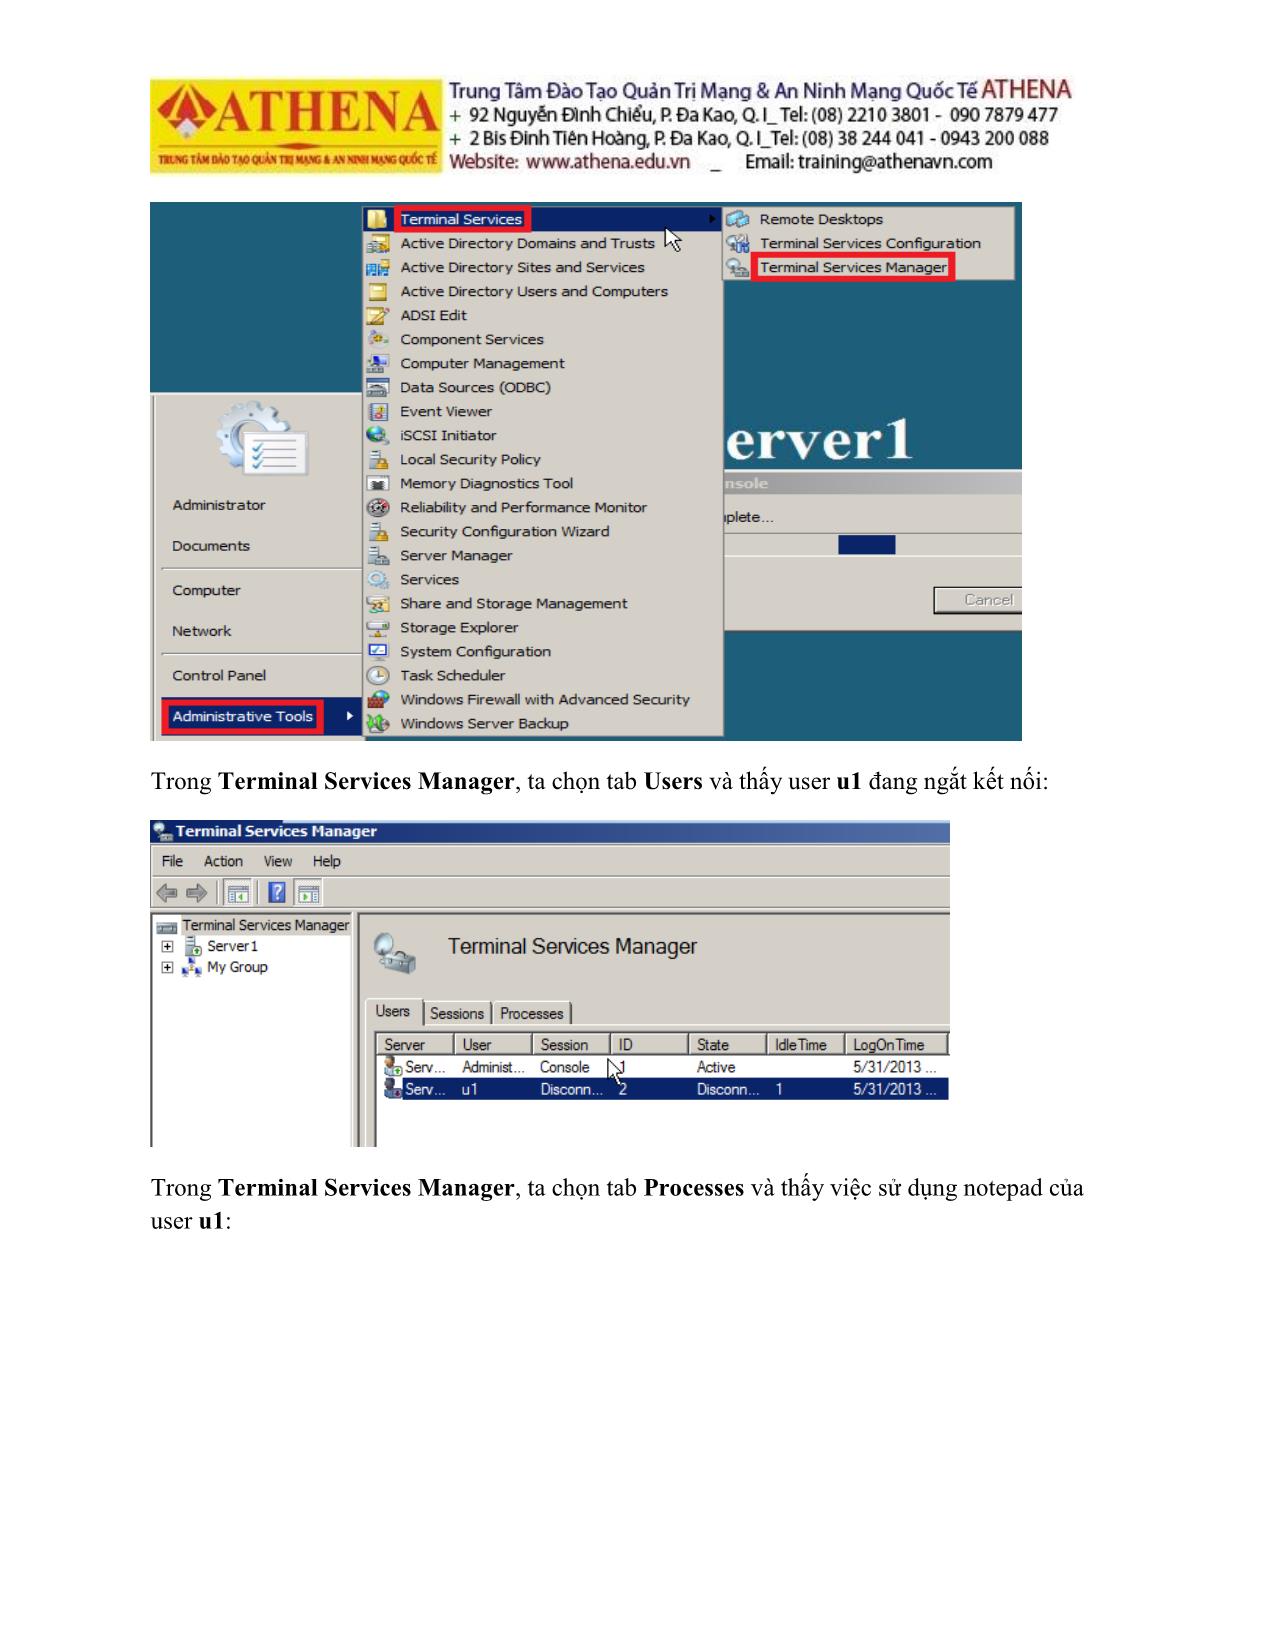 Tài liệu Hướng dẫn thực hành quản trị mạng - Remote desktop trang 5